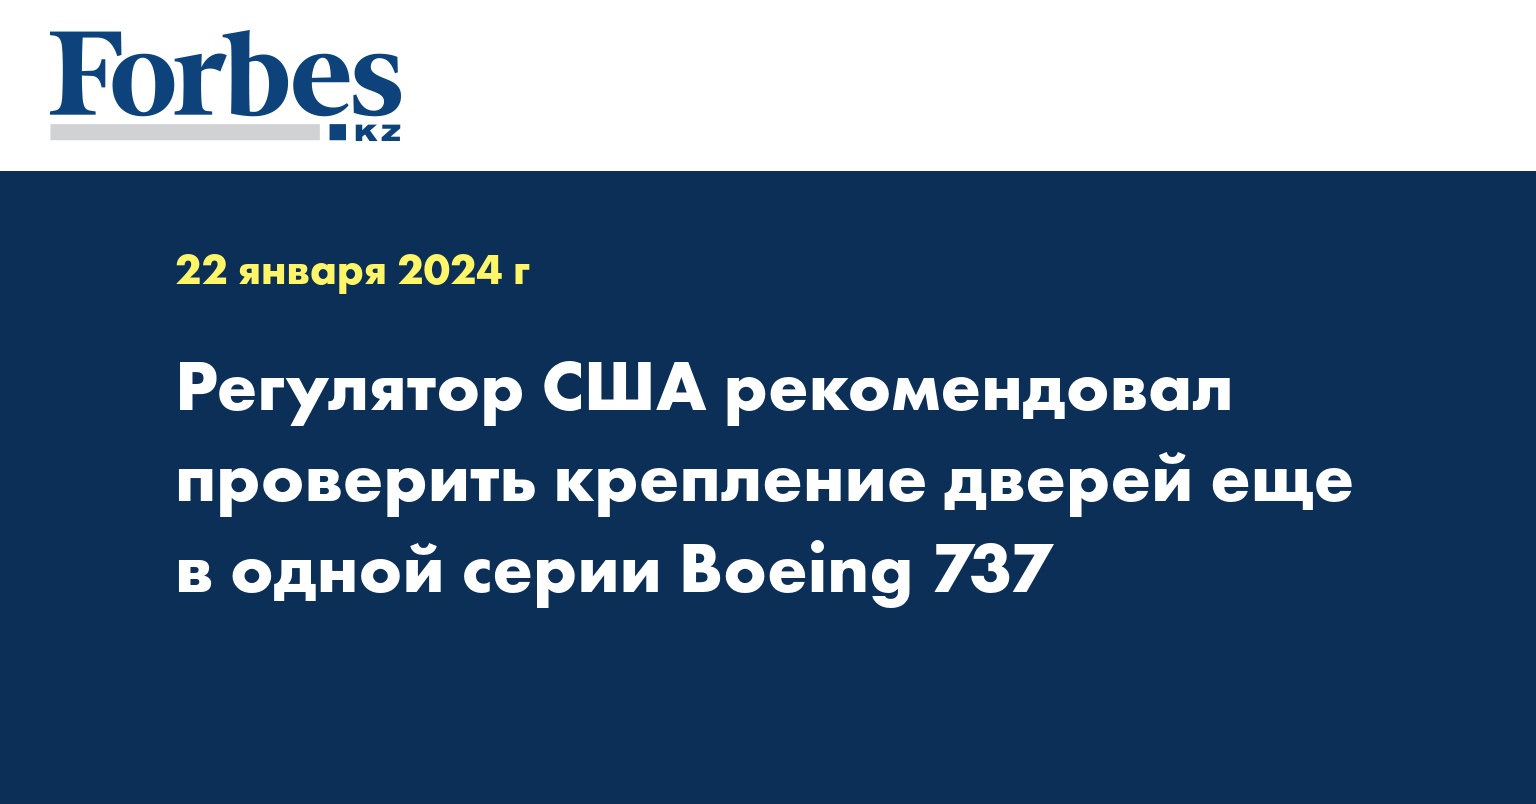 Регулятор США рекомендовал проверить крепление дверей еще в одной серии Boeing 737